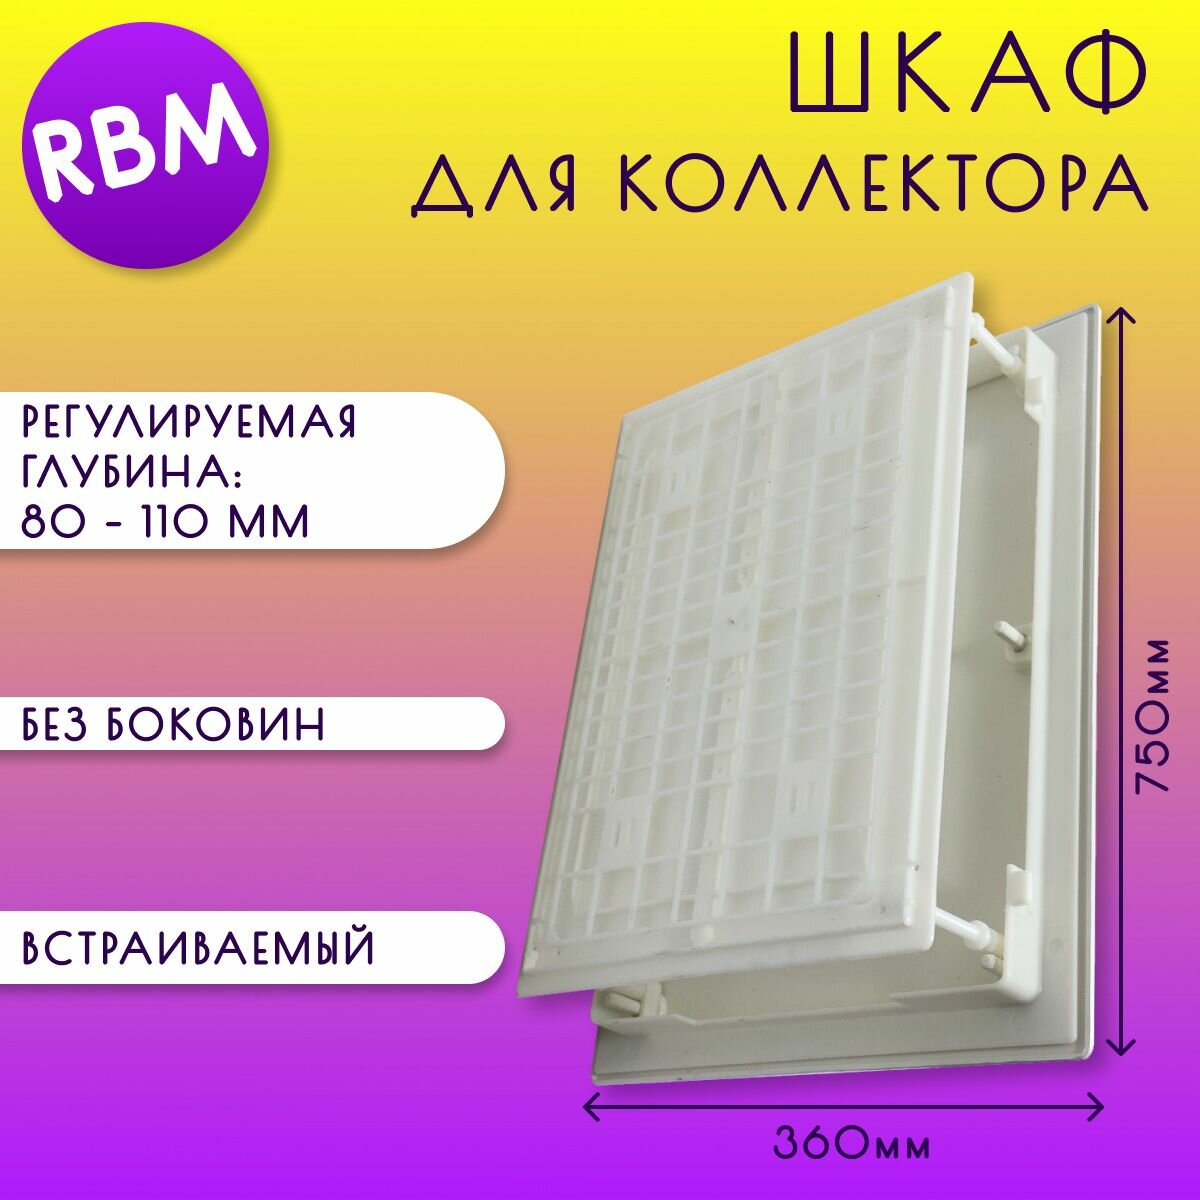 Шкаф для коллектора, встраиваемый, без боковин, пластик, RBM, арт. 86.75.00, 360 х 750 х (80-110) мм